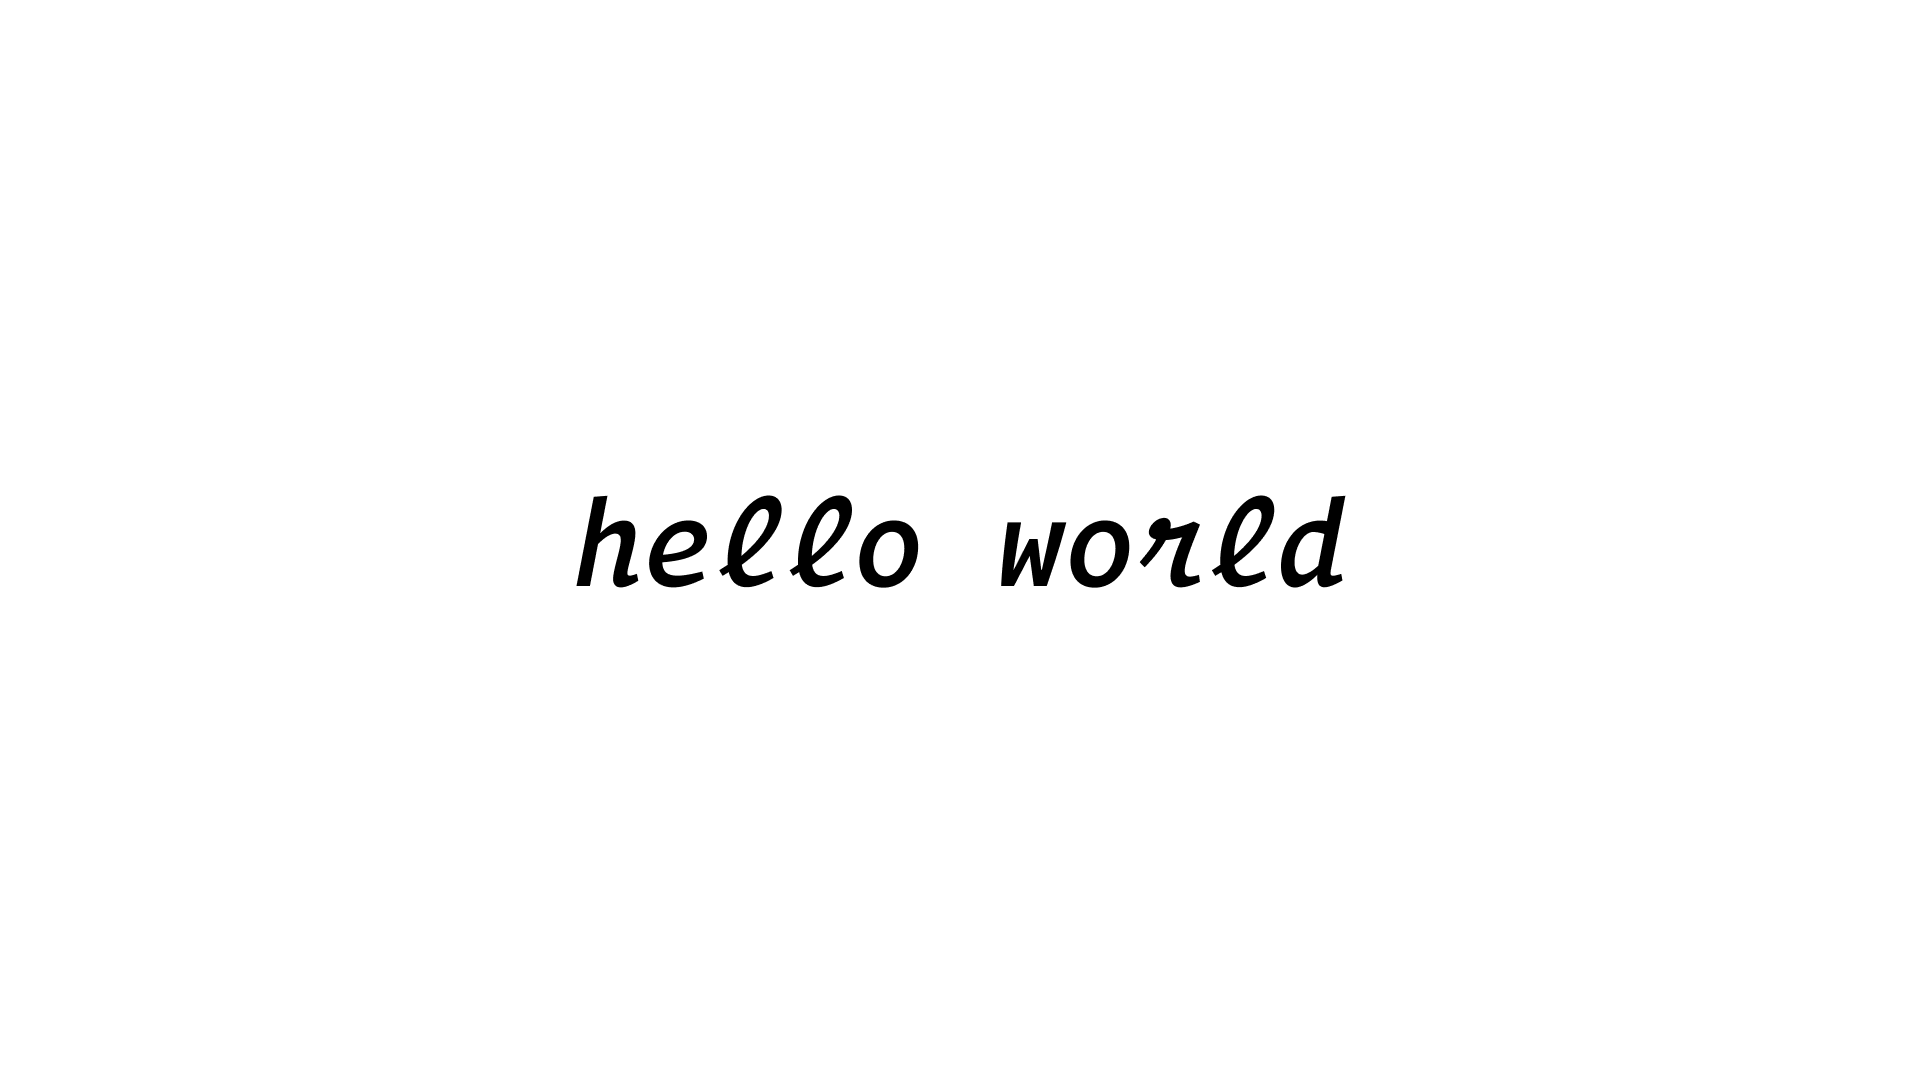 Hello World Cover